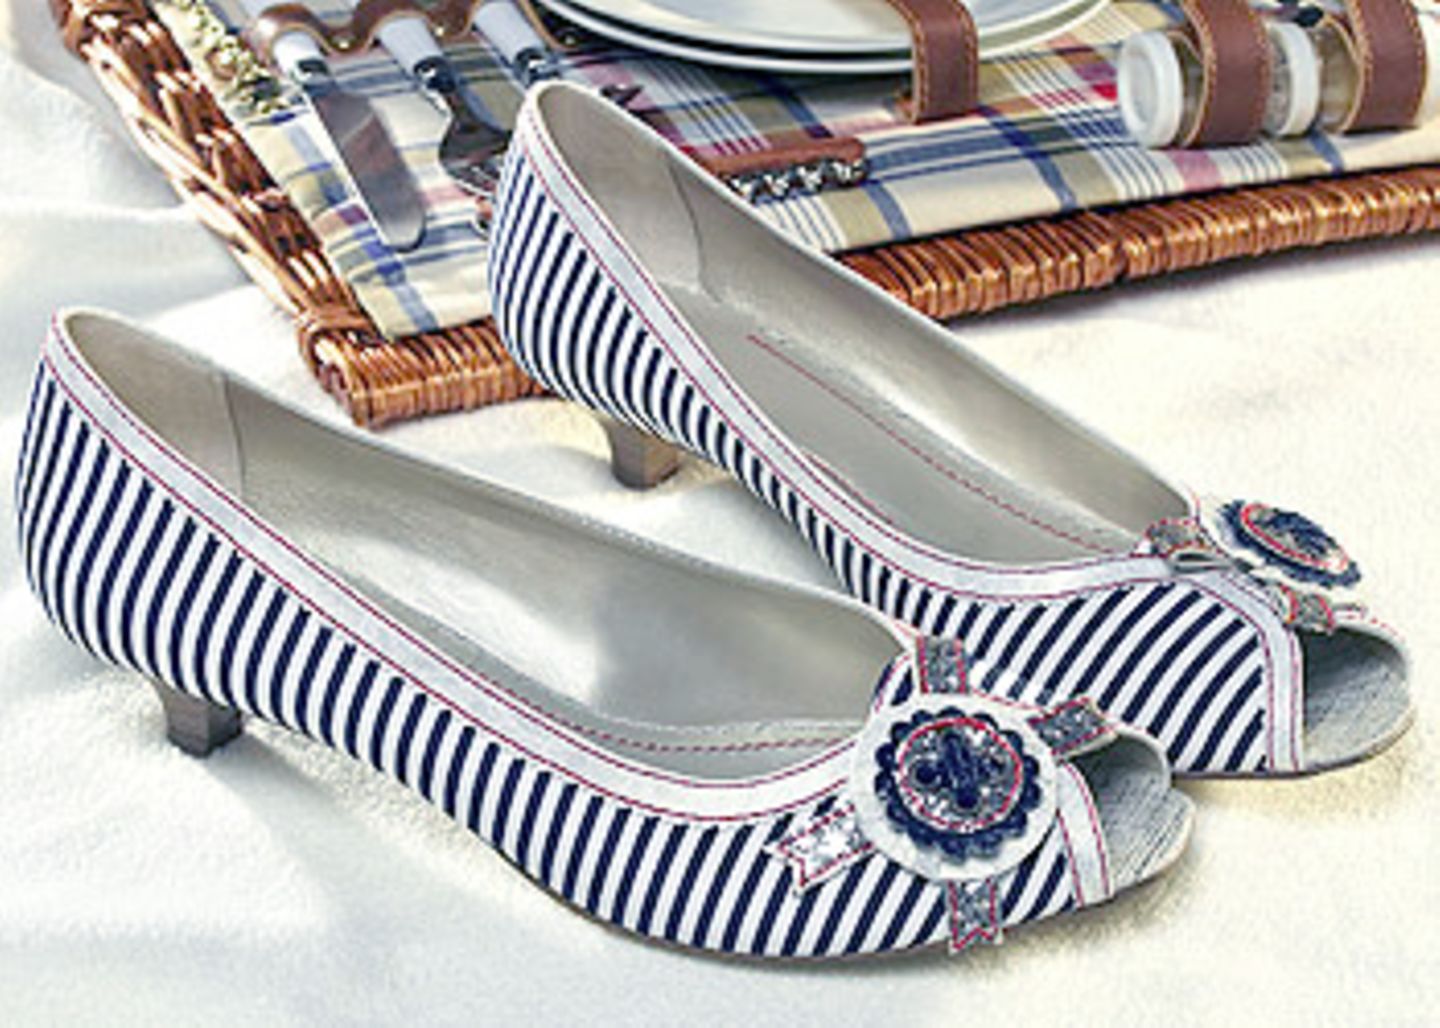 Blau/Weiß gestreifter Textil-Peep-Toe mit Schnalle; in den Größen 36-41, 19,90 Euro; von Deichmann